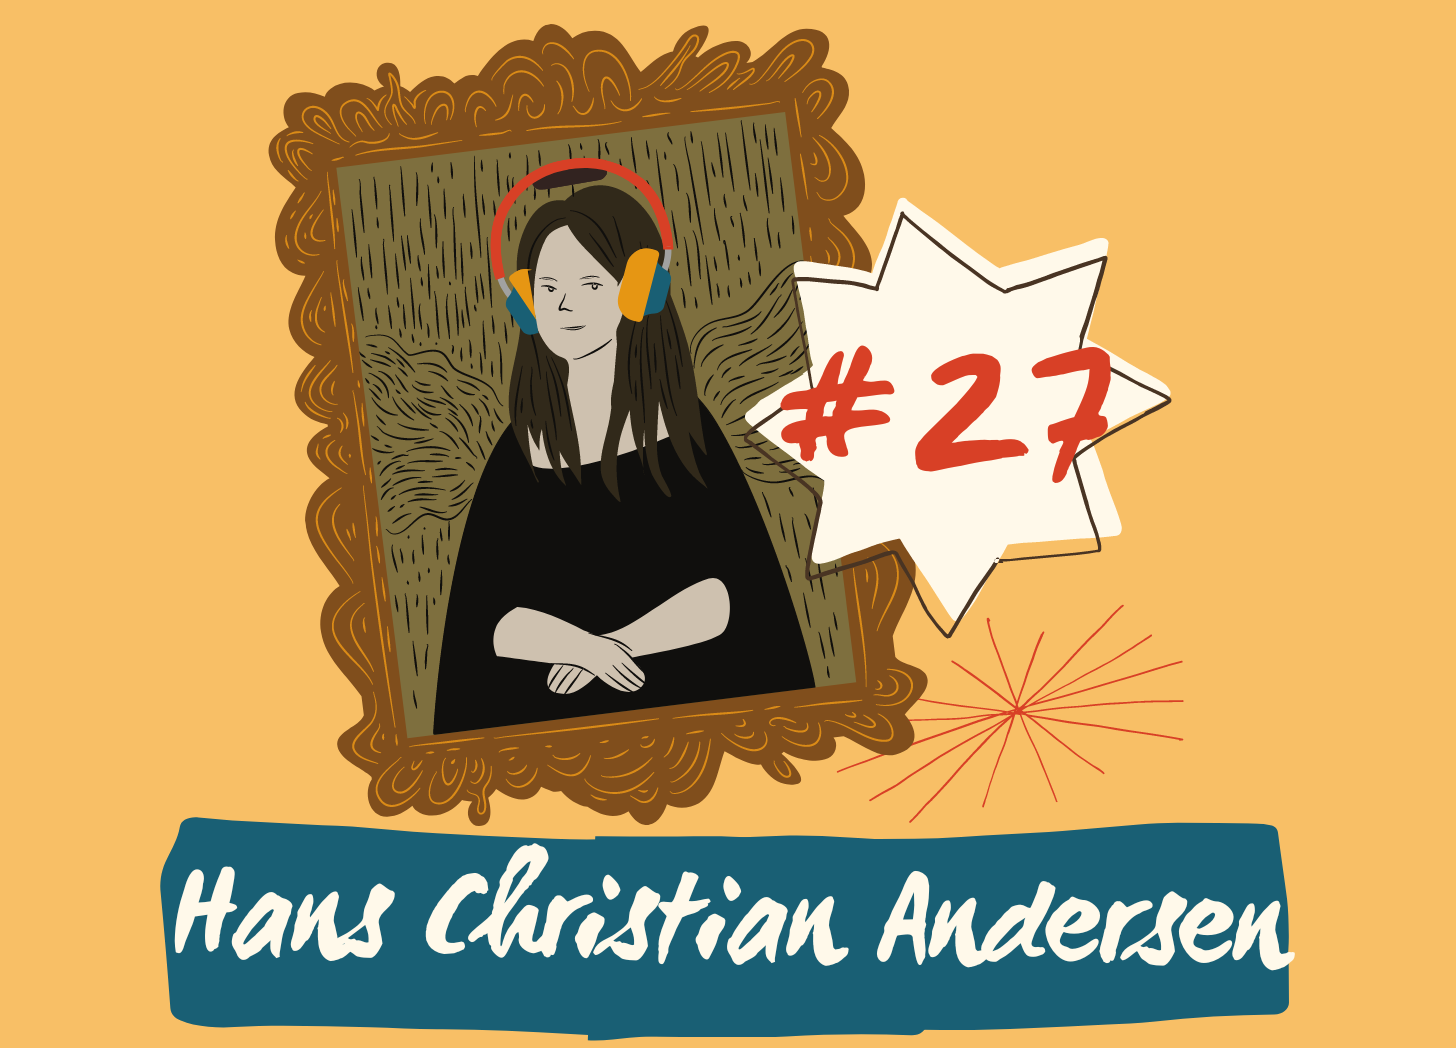 Episode 27 Hans Christian Andersen